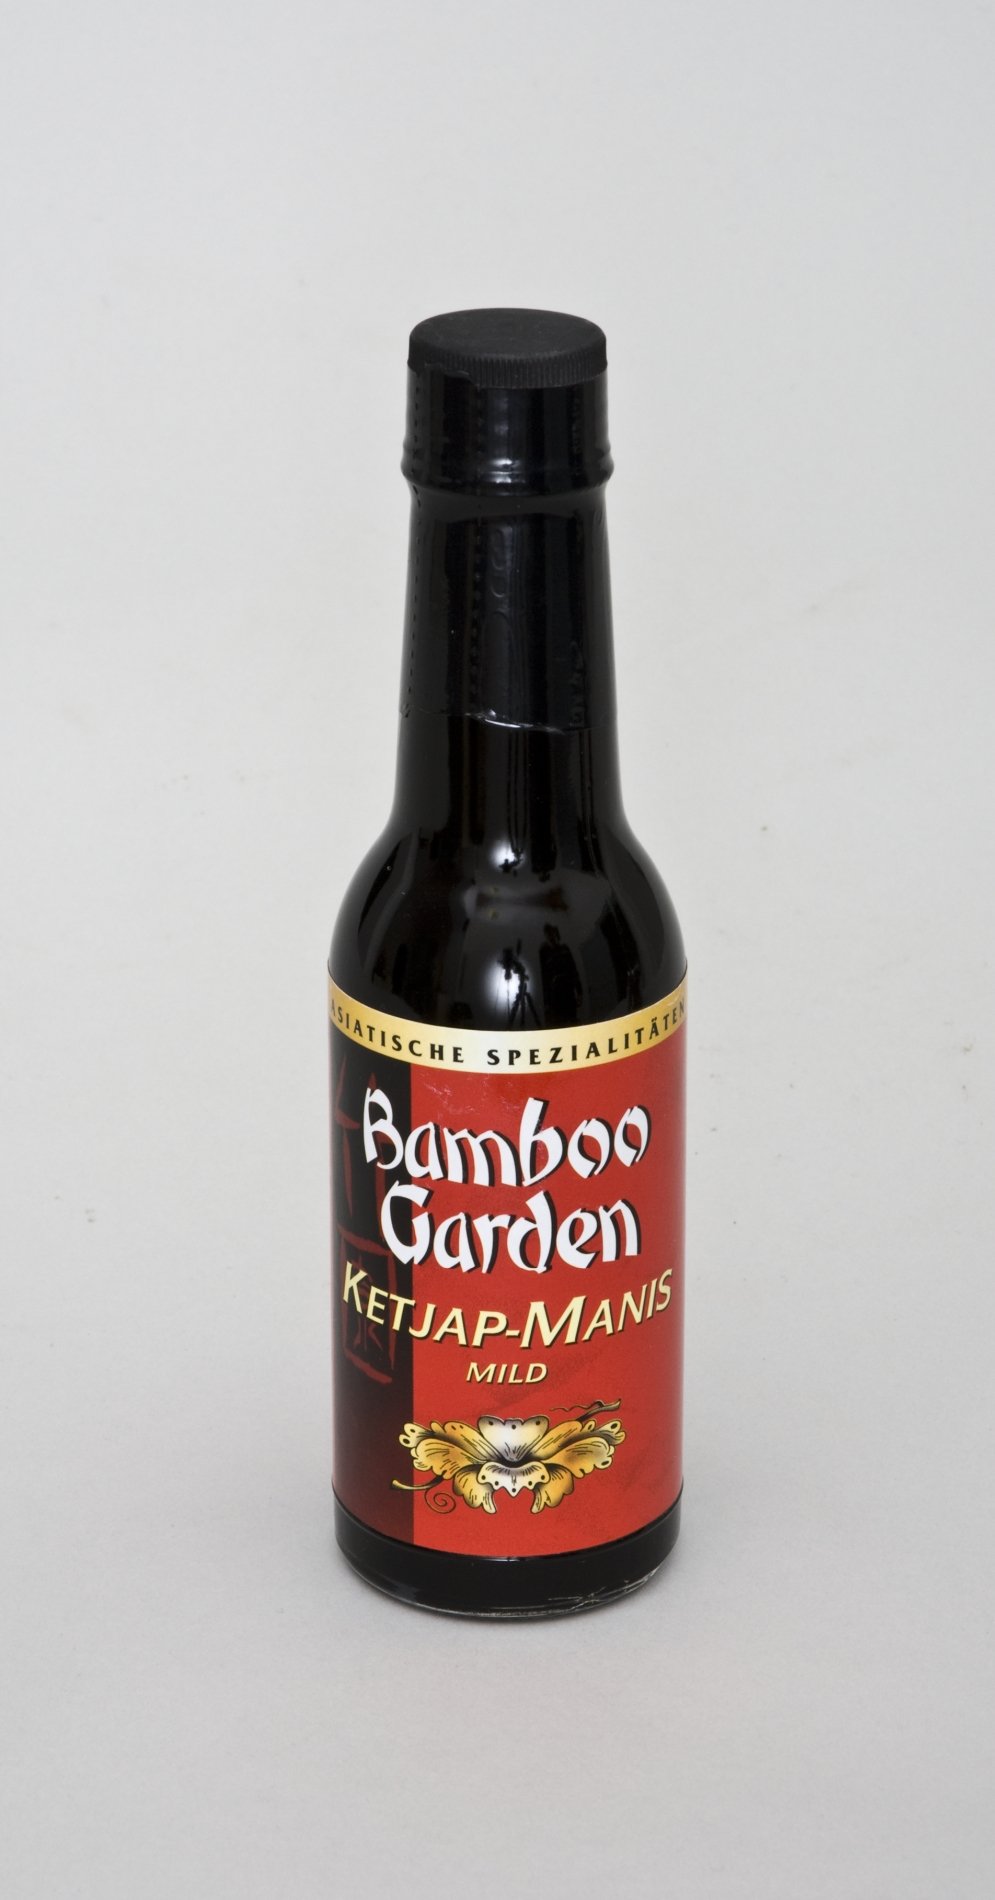 Einkauf Biolek: Flasche "Ketjap-Manis" der Marke "Bamboo Garden" (Stiftung Domäne Dahlem - Landgut und Museum, Weiternutzung nur mit Genehmigung des Museums CC BY-NC-SA)